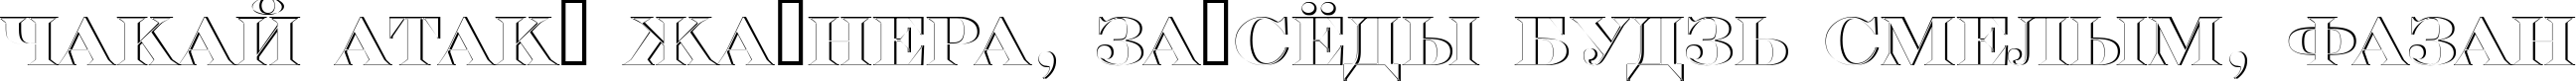 Пример написания шрифтом a_SeriferTitulSh текста на белорусском